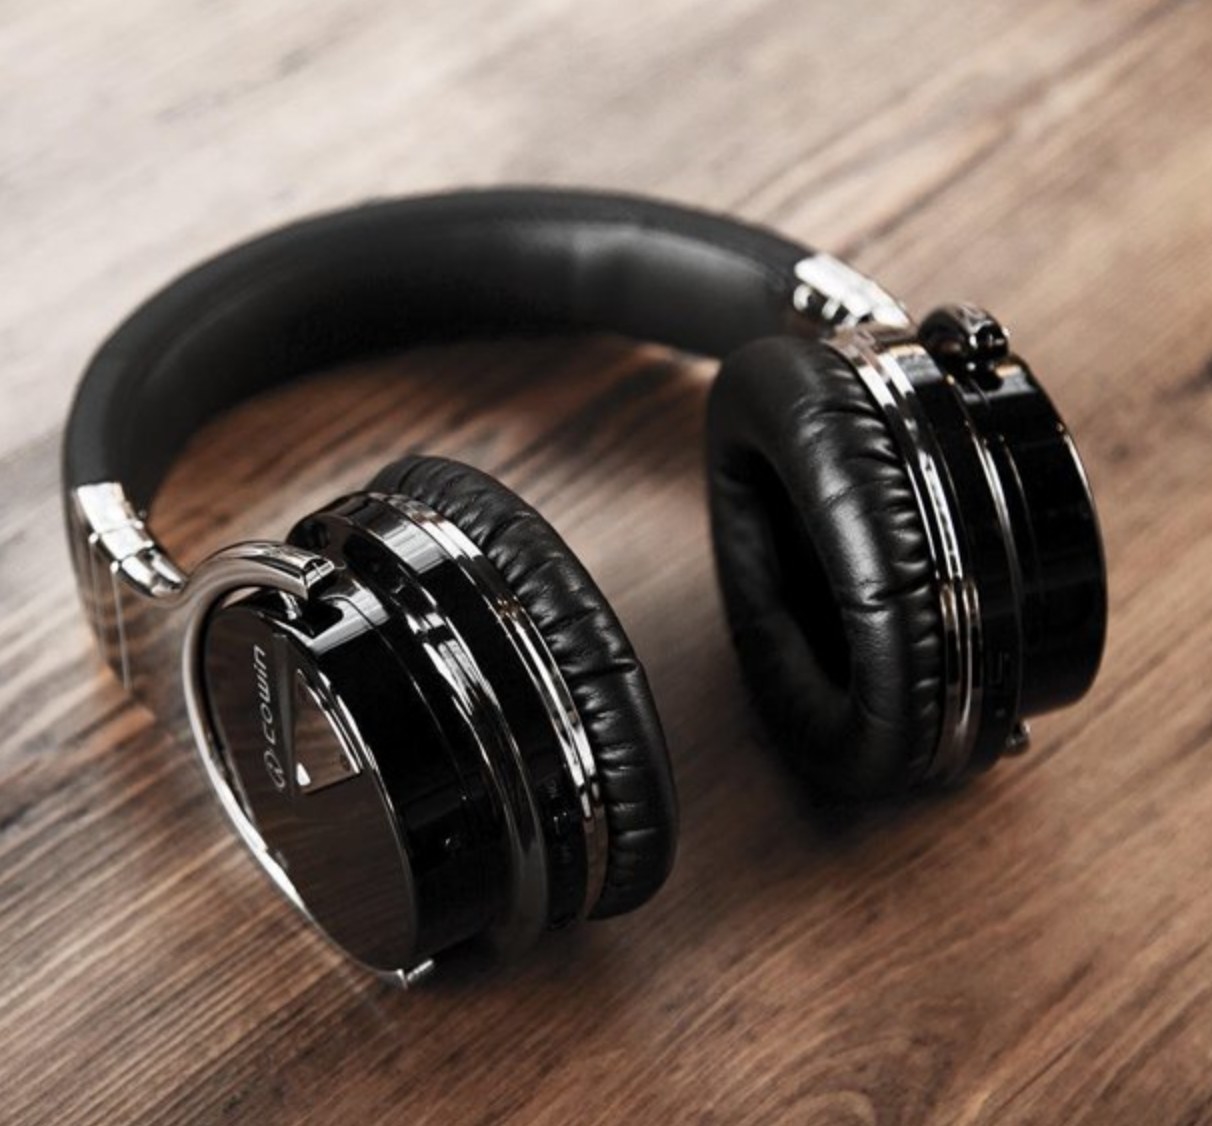 the black headphones